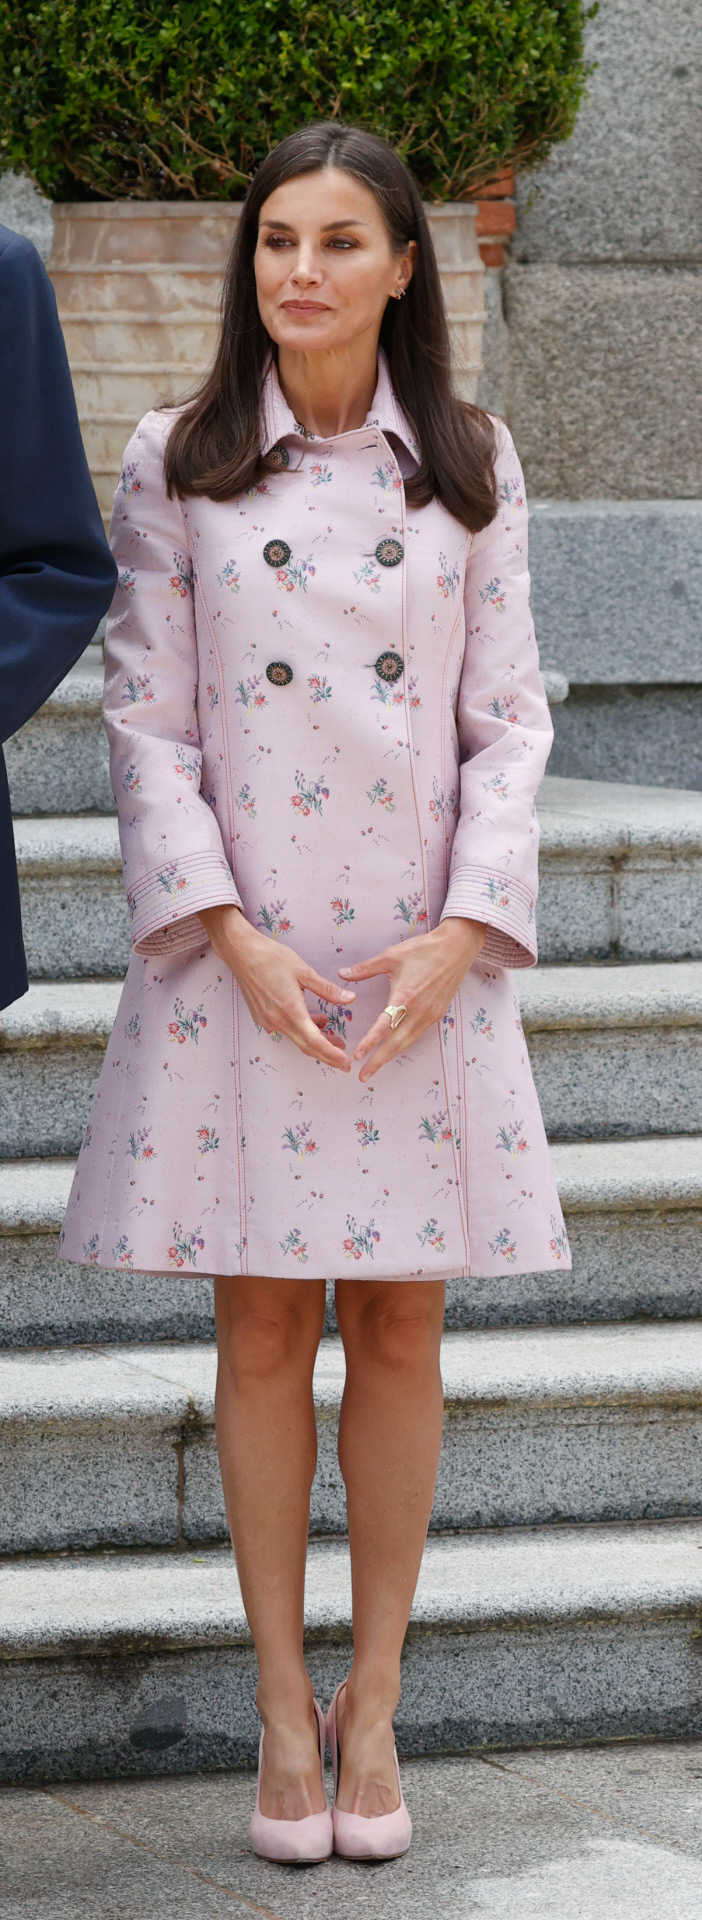 La reina Letizia se atreve con la minifalda.